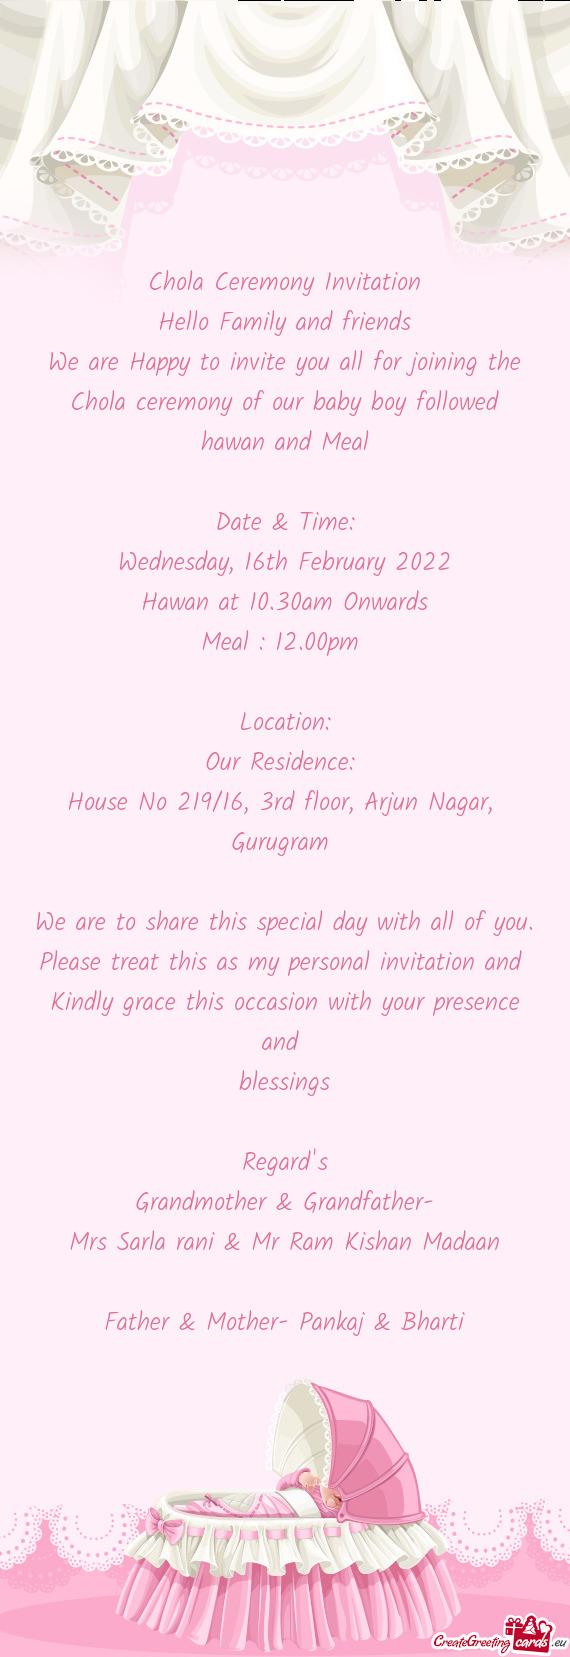 House No 219/16, 3rd floor, Arjun Nagar